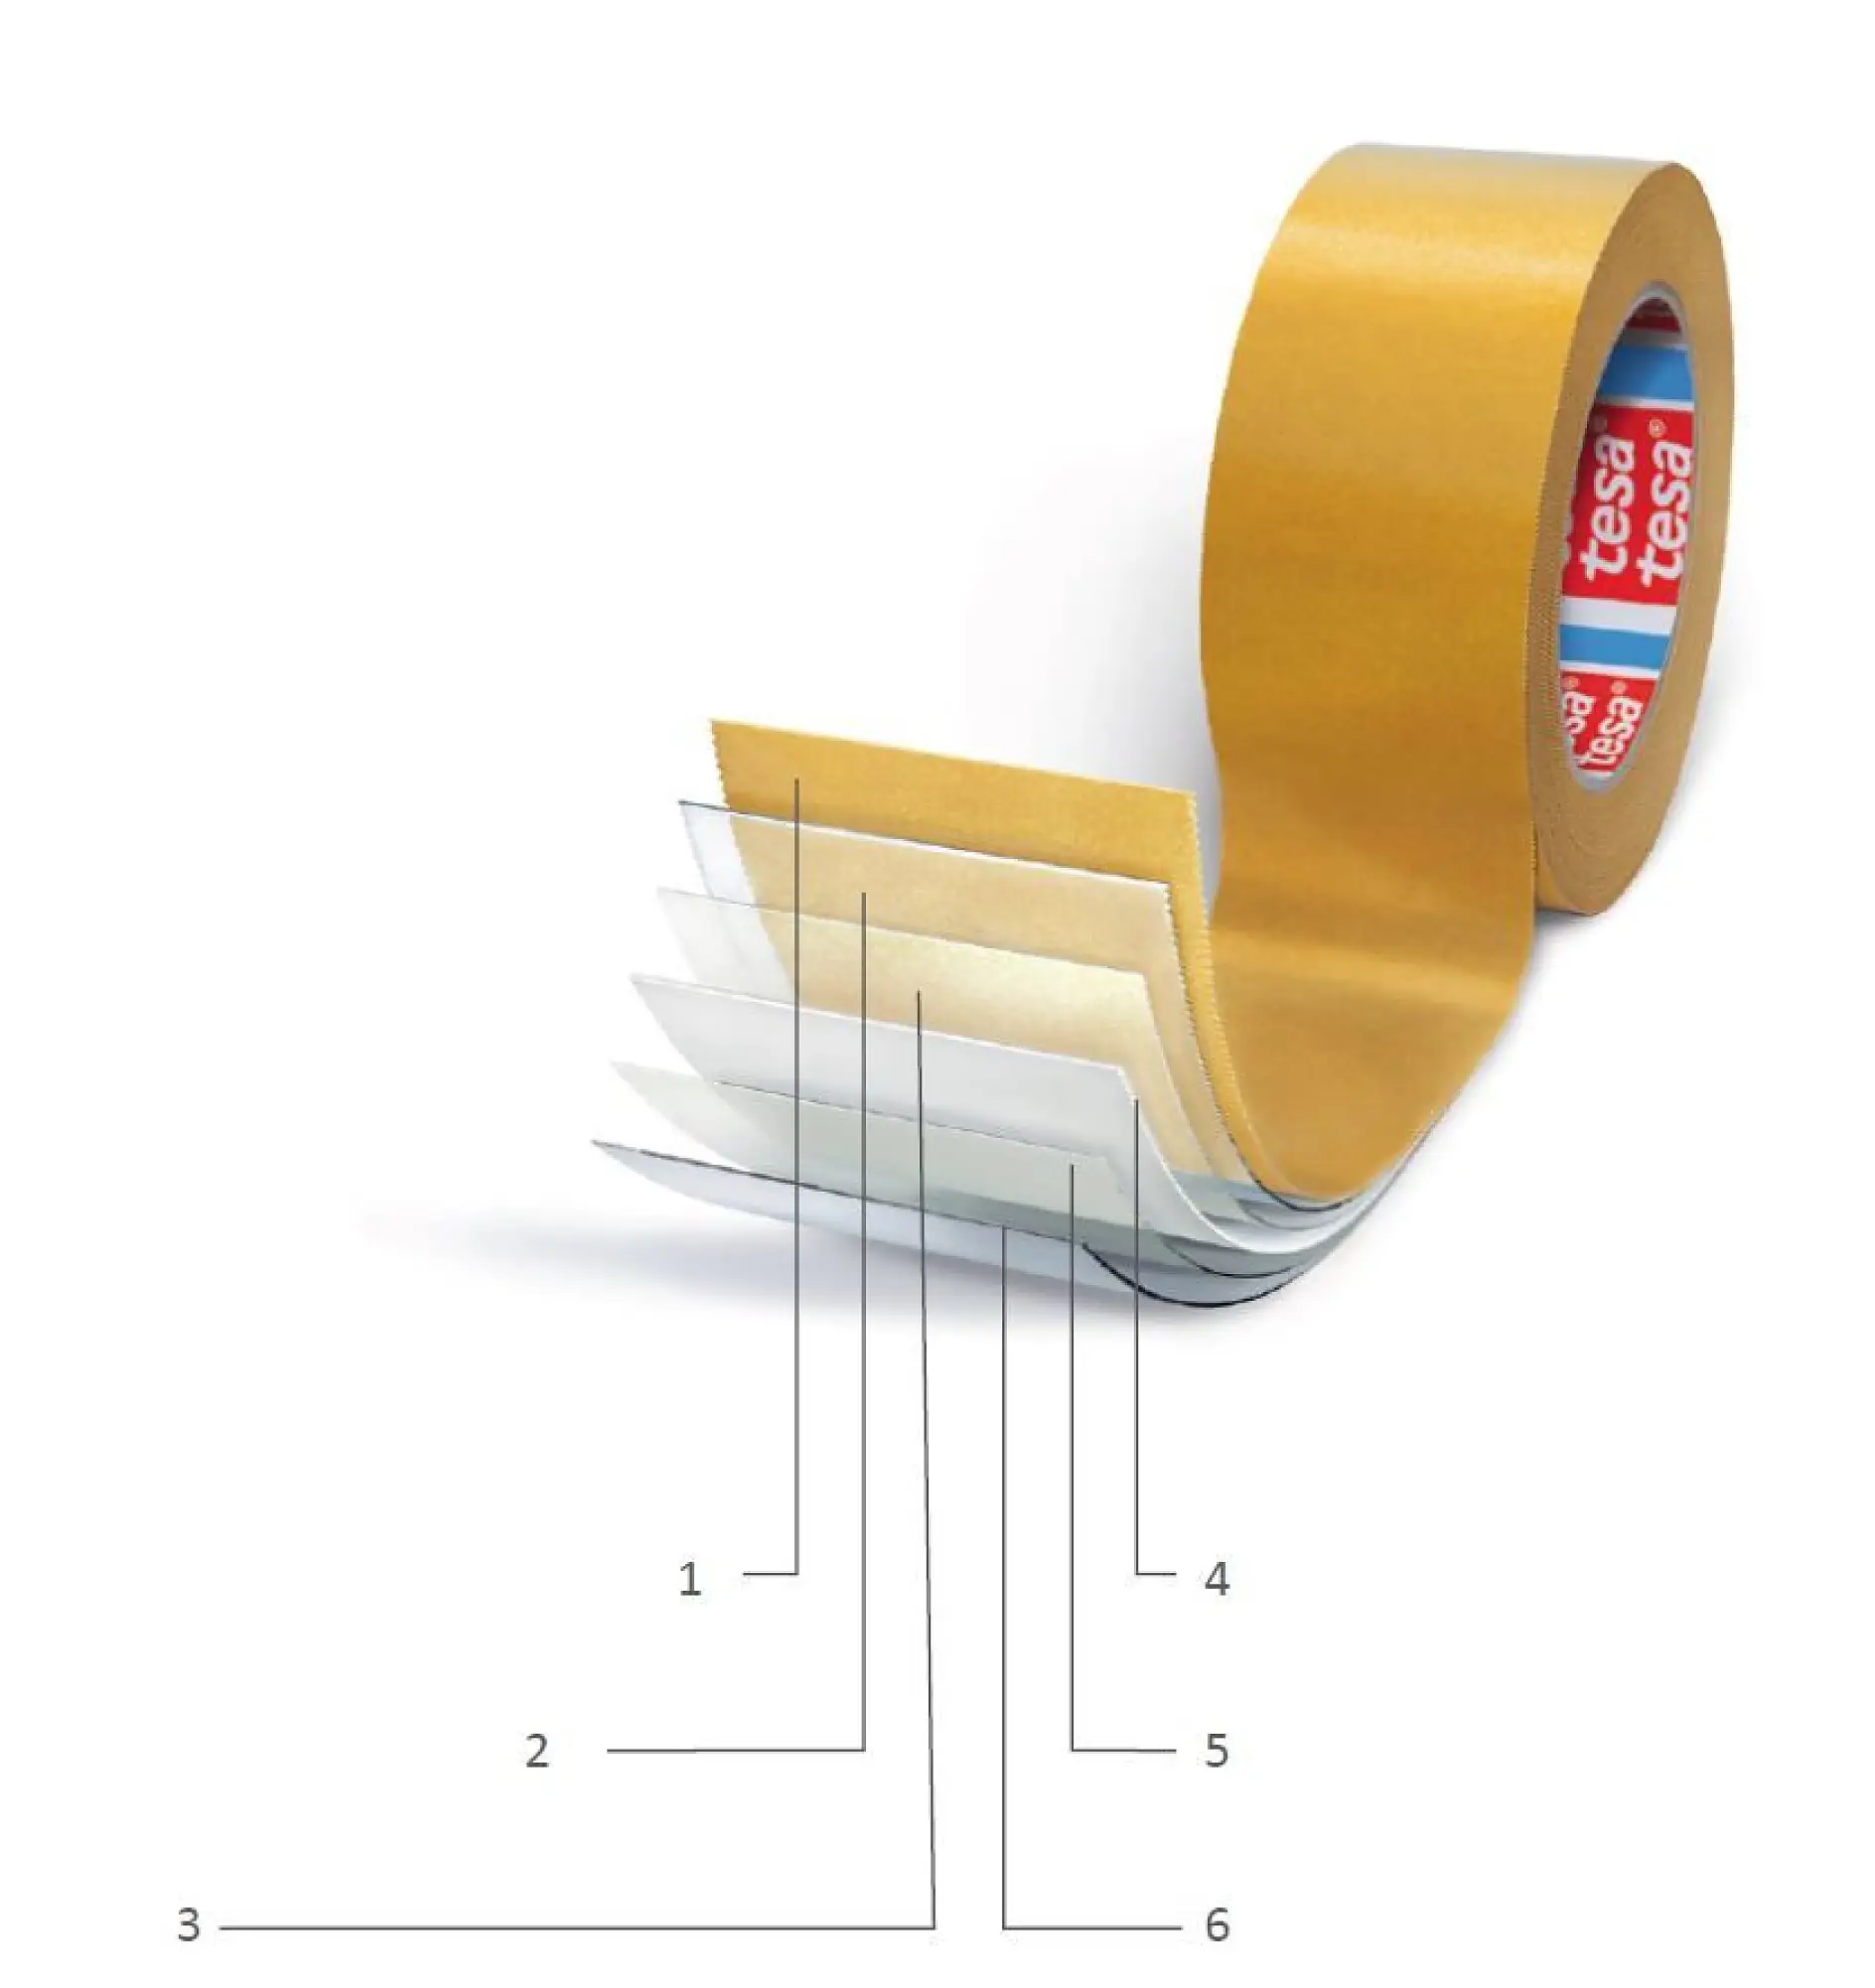 Estructura de la cinta adhesiva de doble cara: 1) Revestimiento de despegado (con silicona), 2) Adhesivo (lado cerrado), 3) Imprimación, 4) Soporte, 5) Imprimación, 6) Adhesivo (lado abierto)